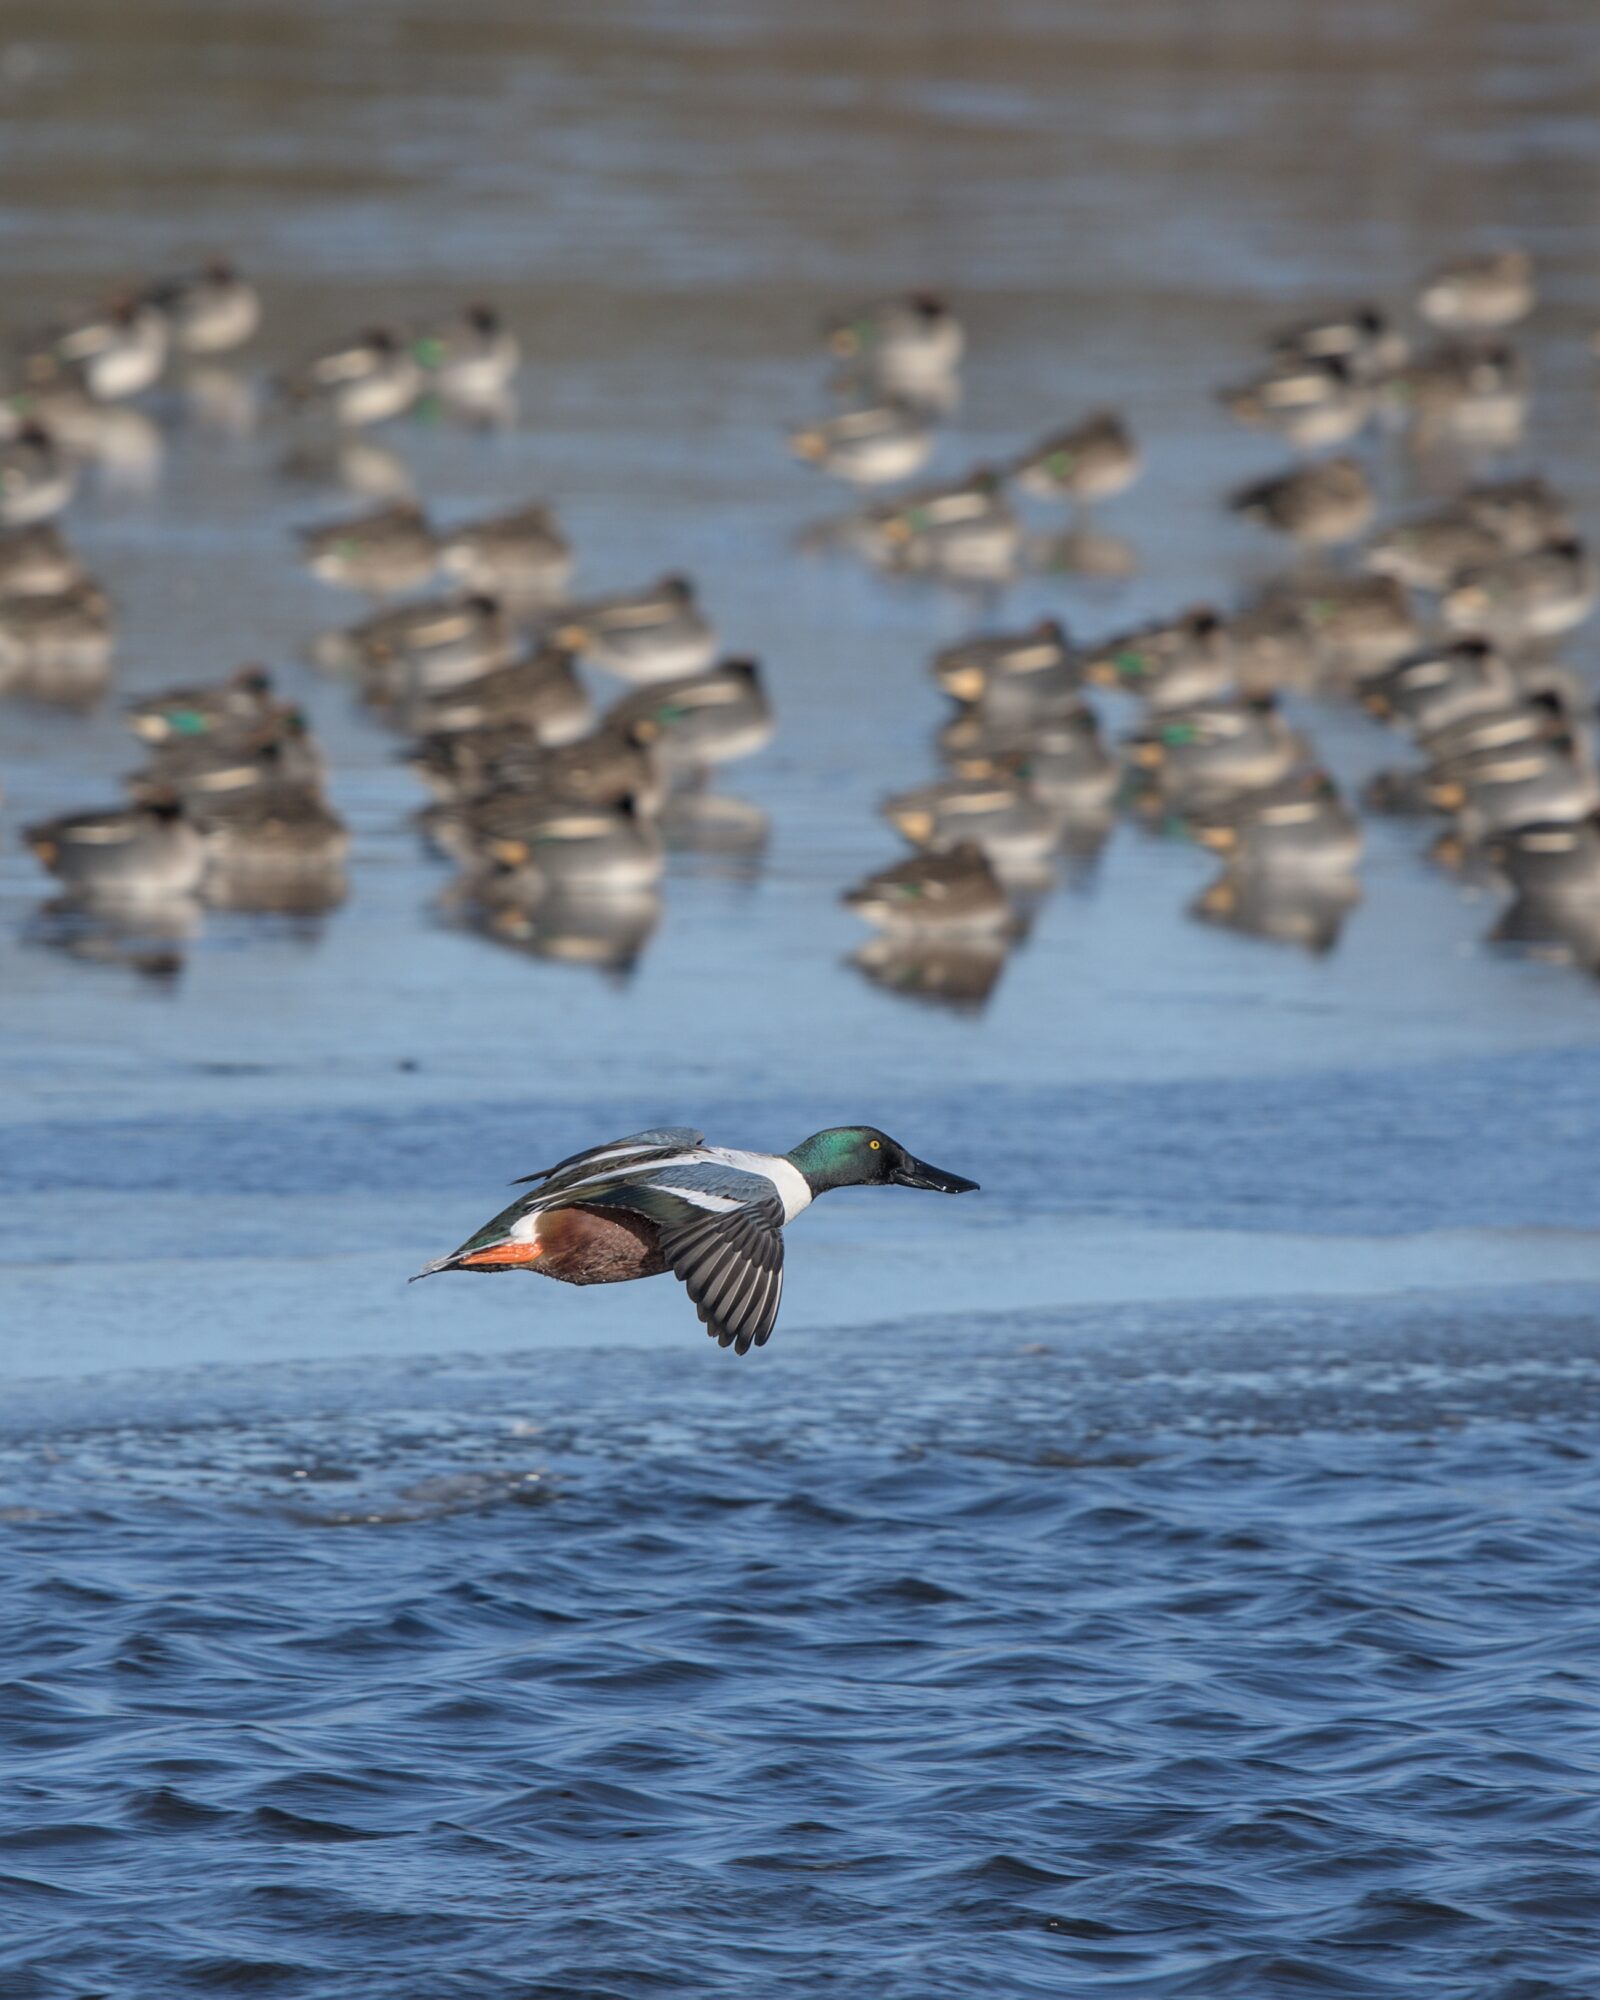 Een eend vliegt over water langs een randje ijs waar nog meer eenden zitten te rusten.